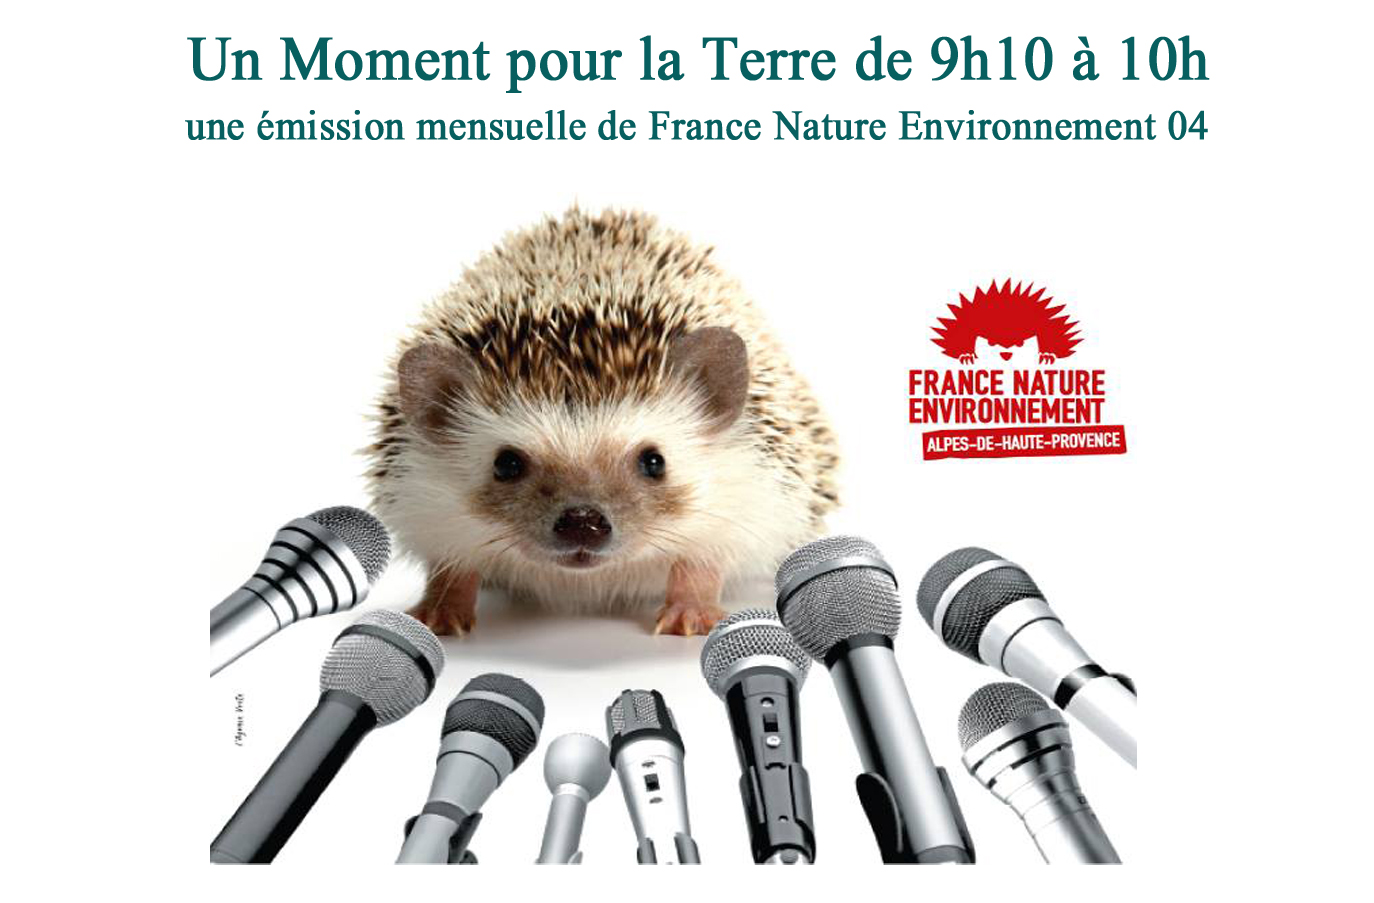  Un moment pour la terre avec France Nature Environnement - Programmation pluriannuelle de l'énergie